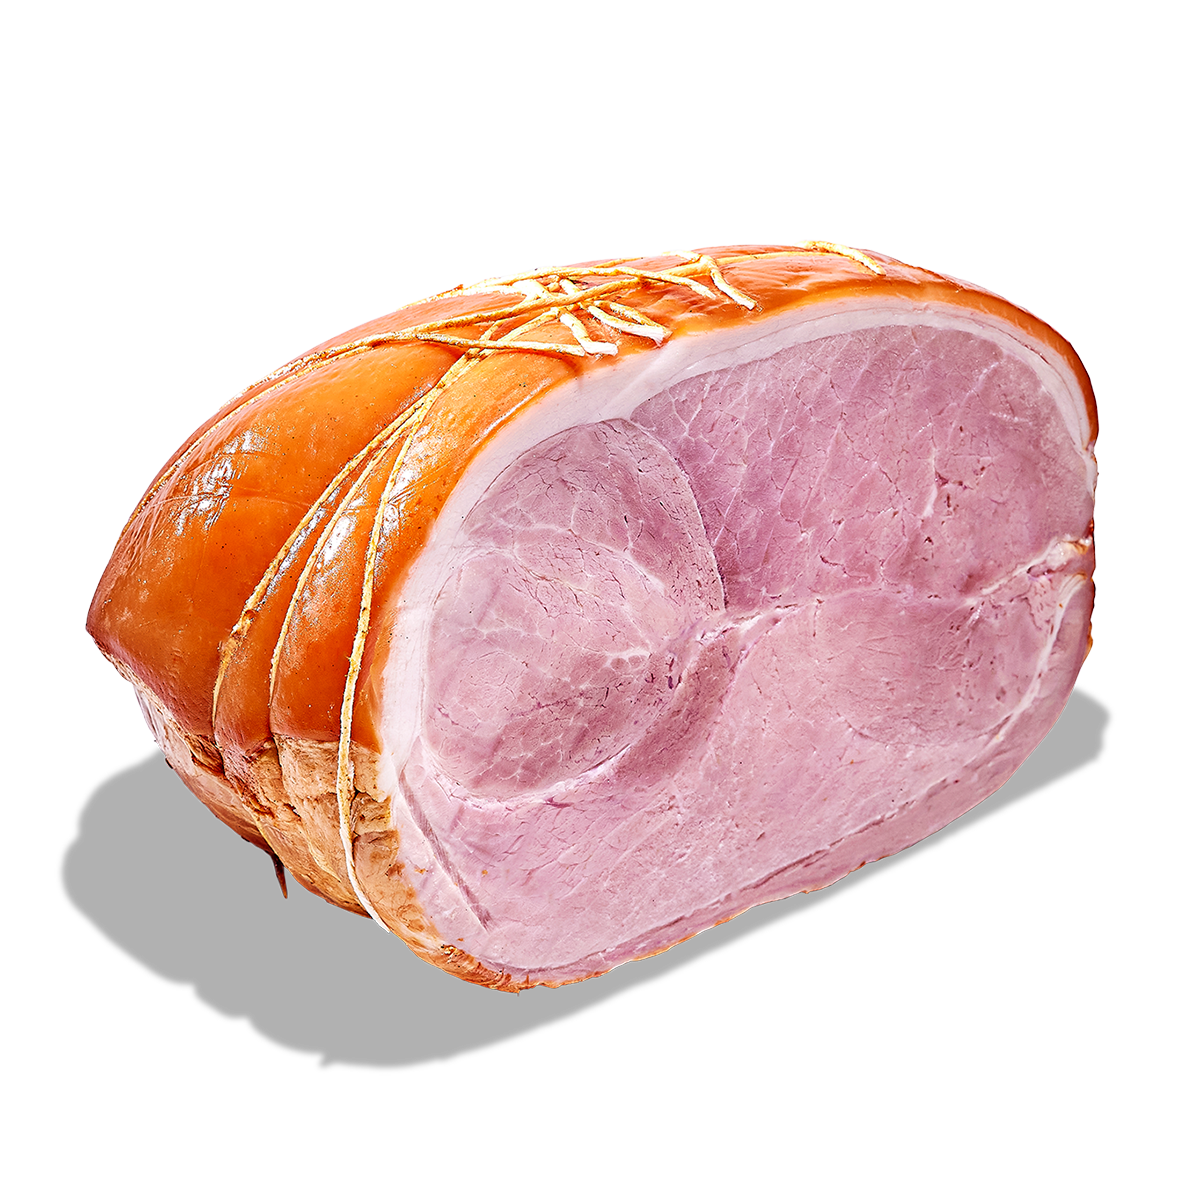 meraki, made with meraki, one and only, made with meraki, naturally smoked ham, gluten free ham